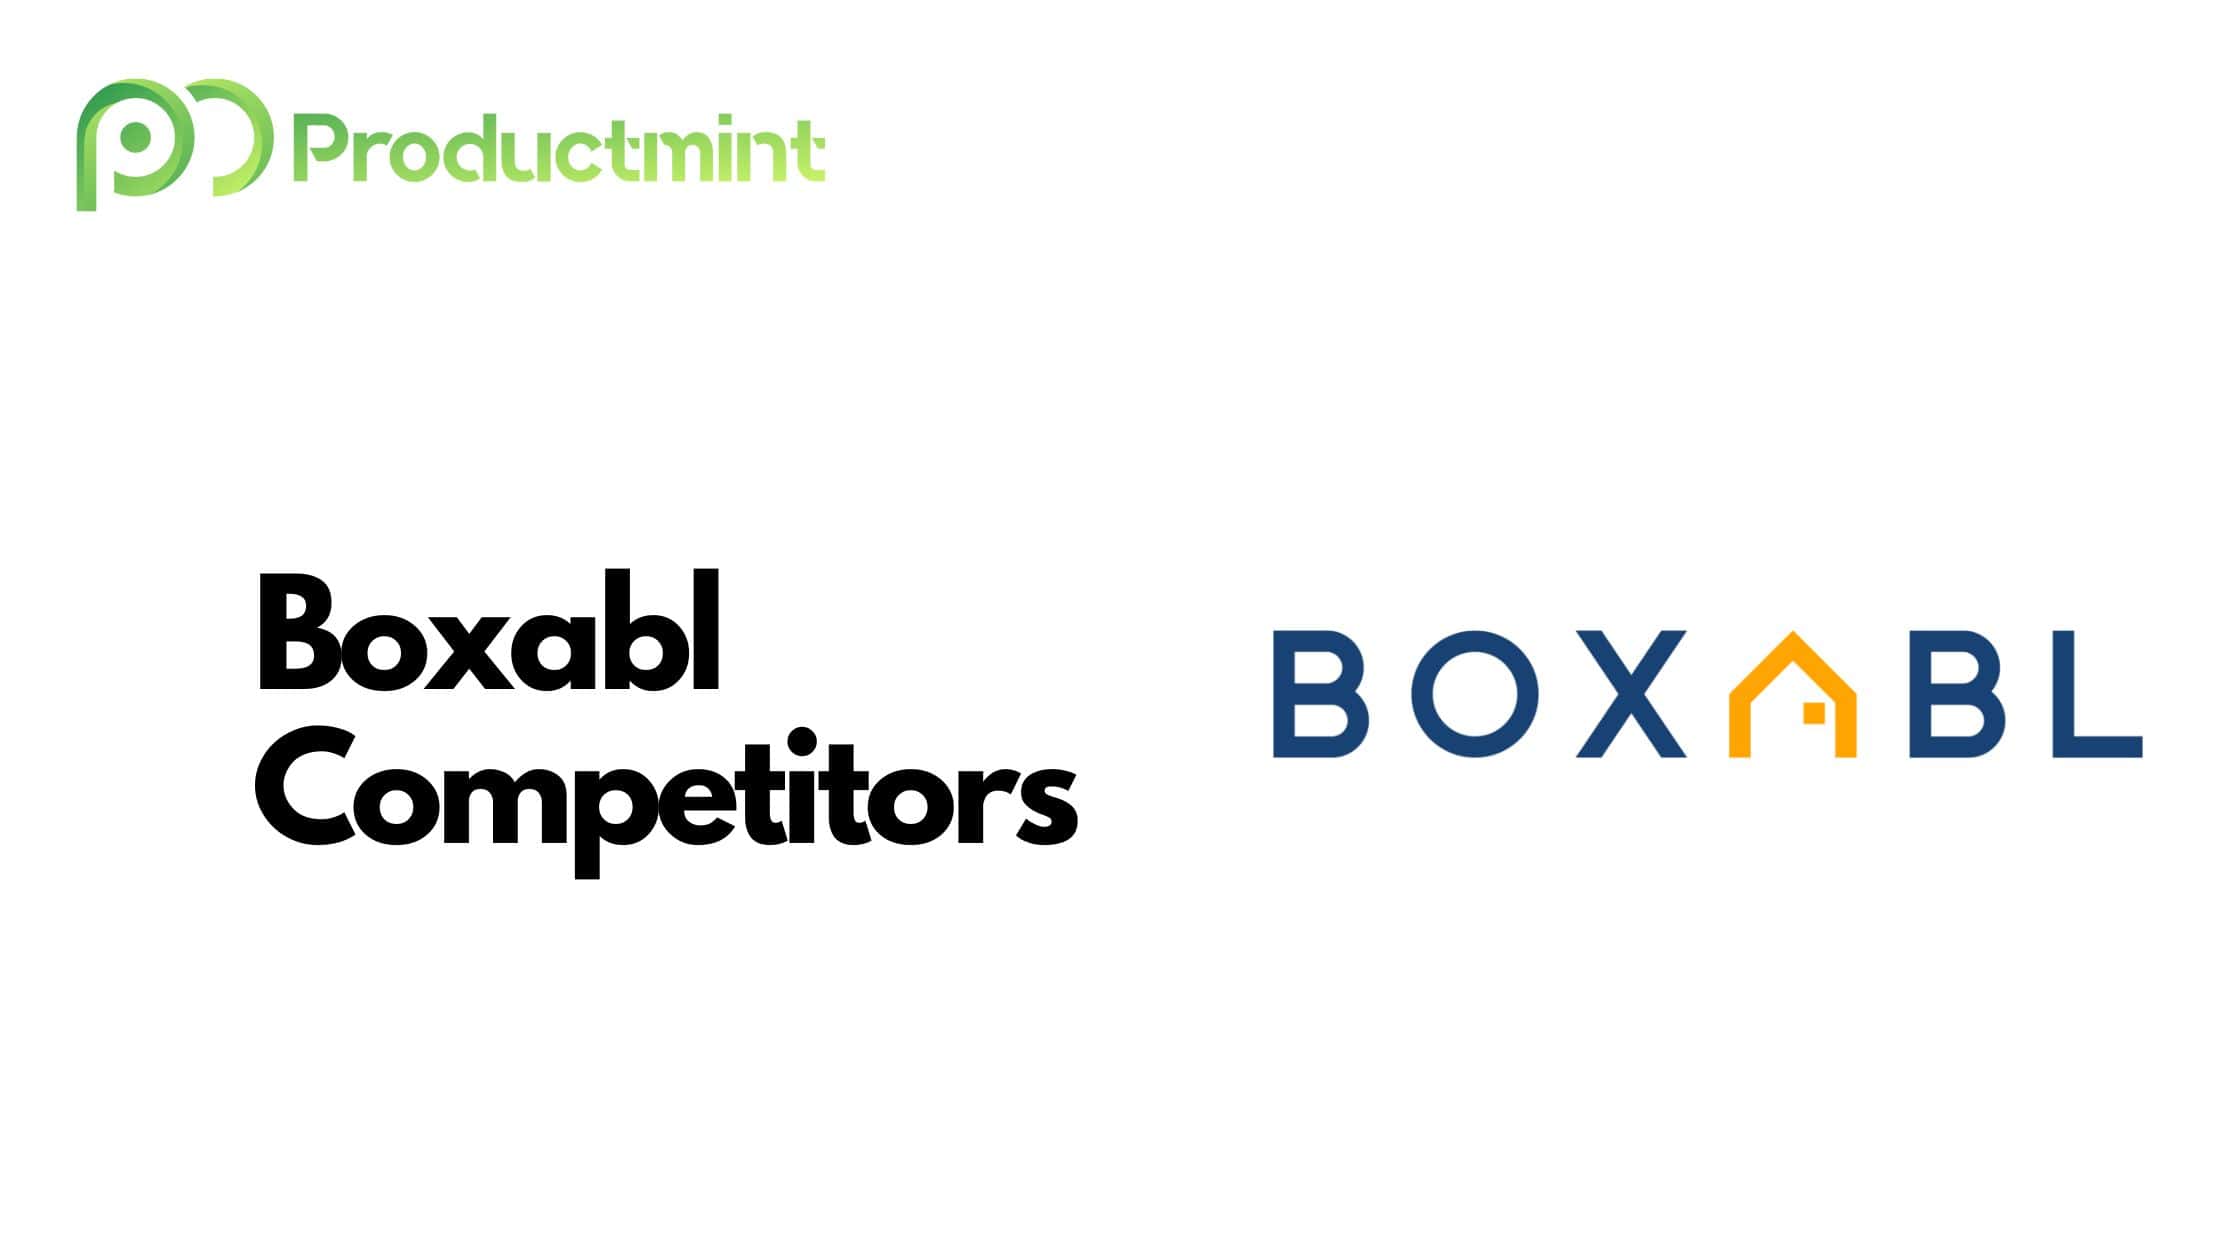 Boxabl Competitors